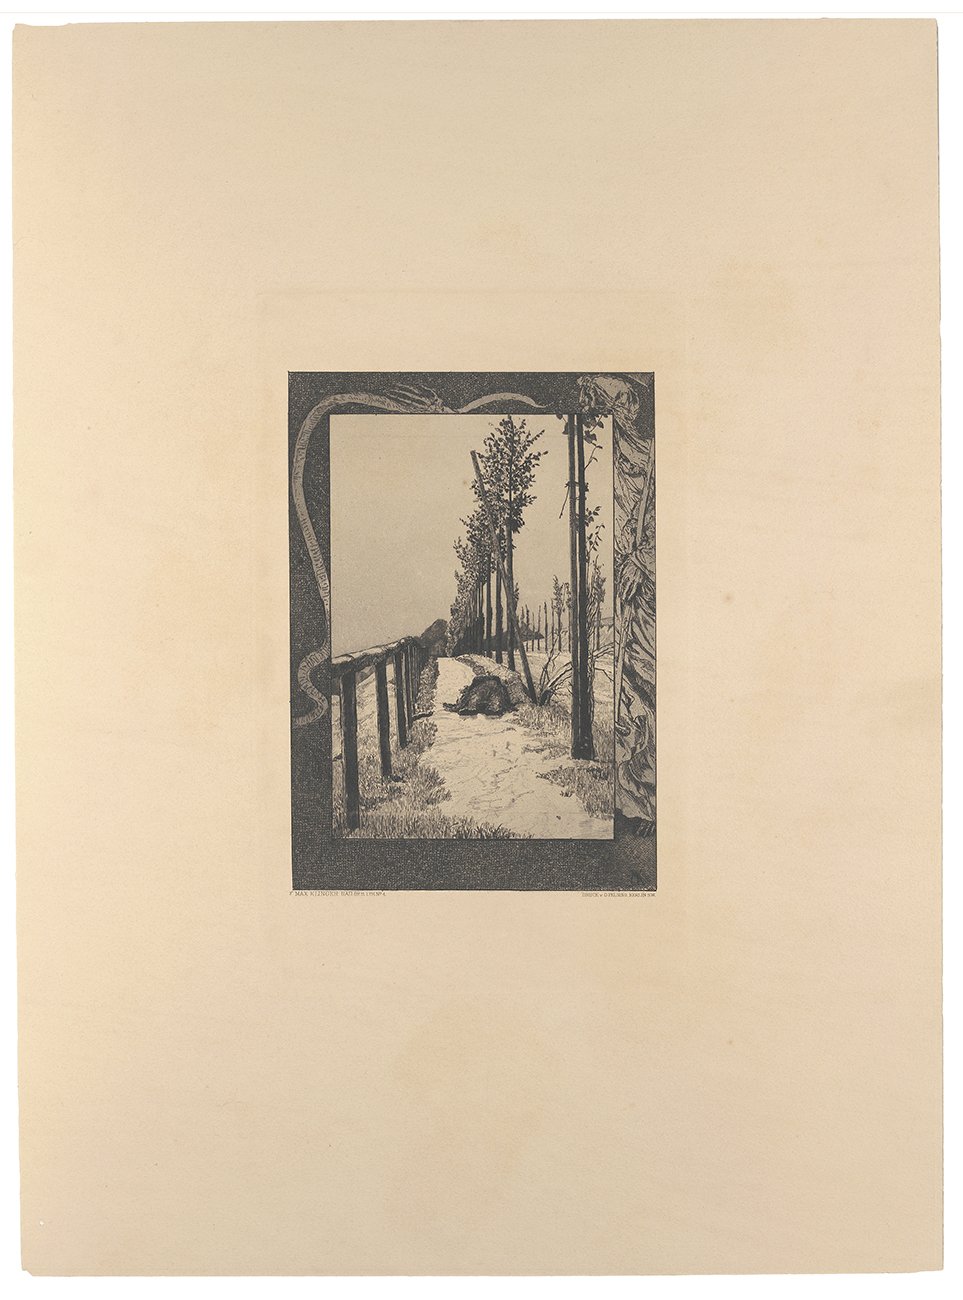 Vom Tode. Erster Teil. Blatt 4: Chaussee (Kunsthalle Bielefeld Public Domain Mark)